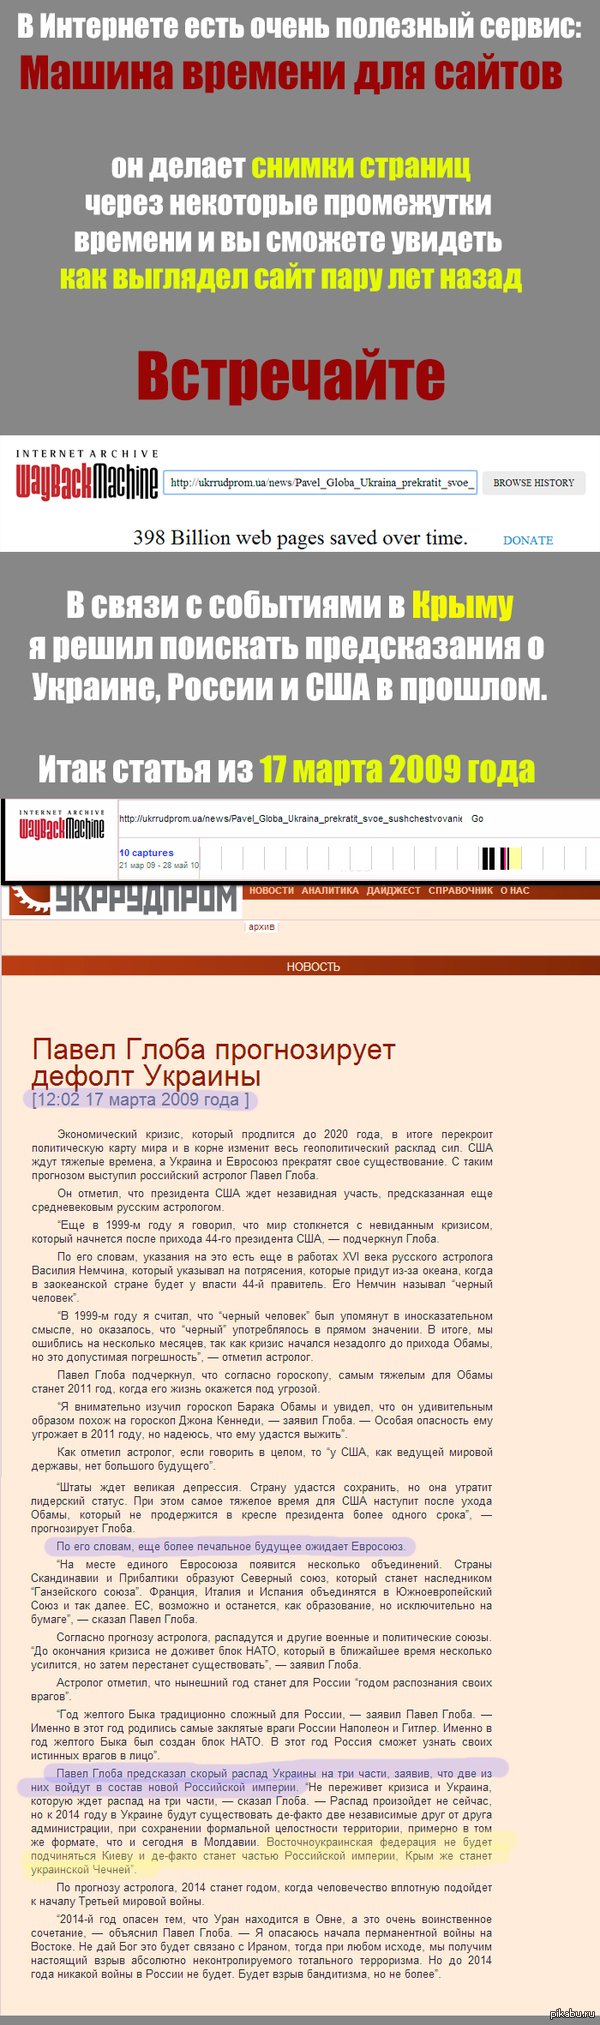       http://web.archive.org/web/20100328213353/http://ukrrudprom.ua/news/Pavel_Globa_Ukraina_prekratit_svoe_sushchestvovanie.html